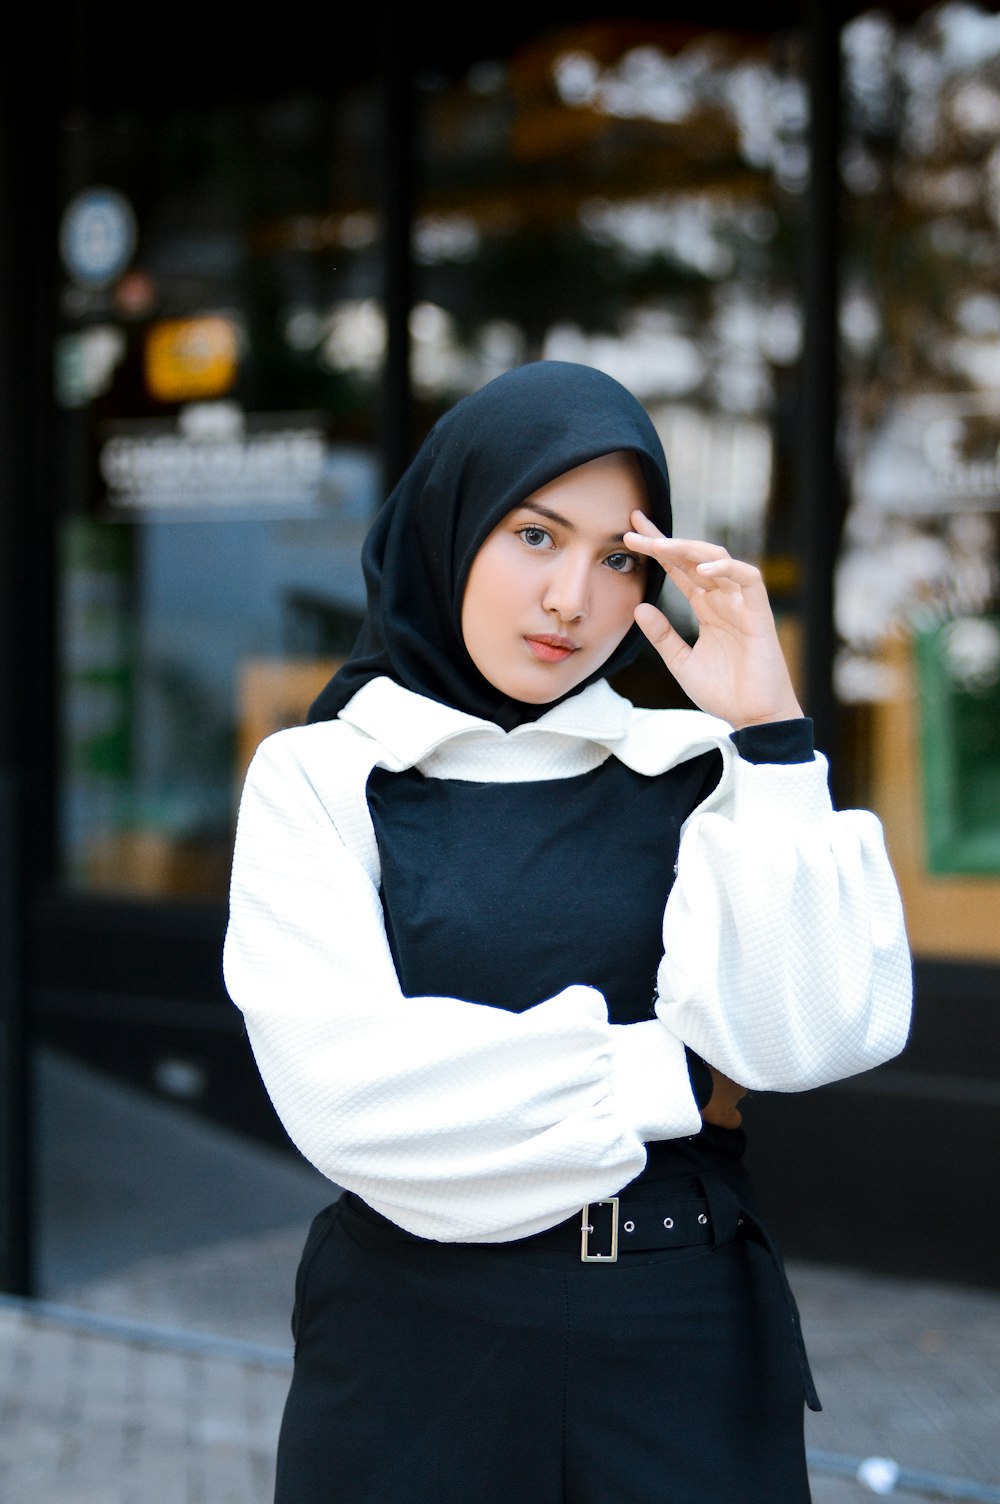 Foto Una mujer con un pañuelo negro en la cabeza – Imagen Indonesia gratis  en Unsplash